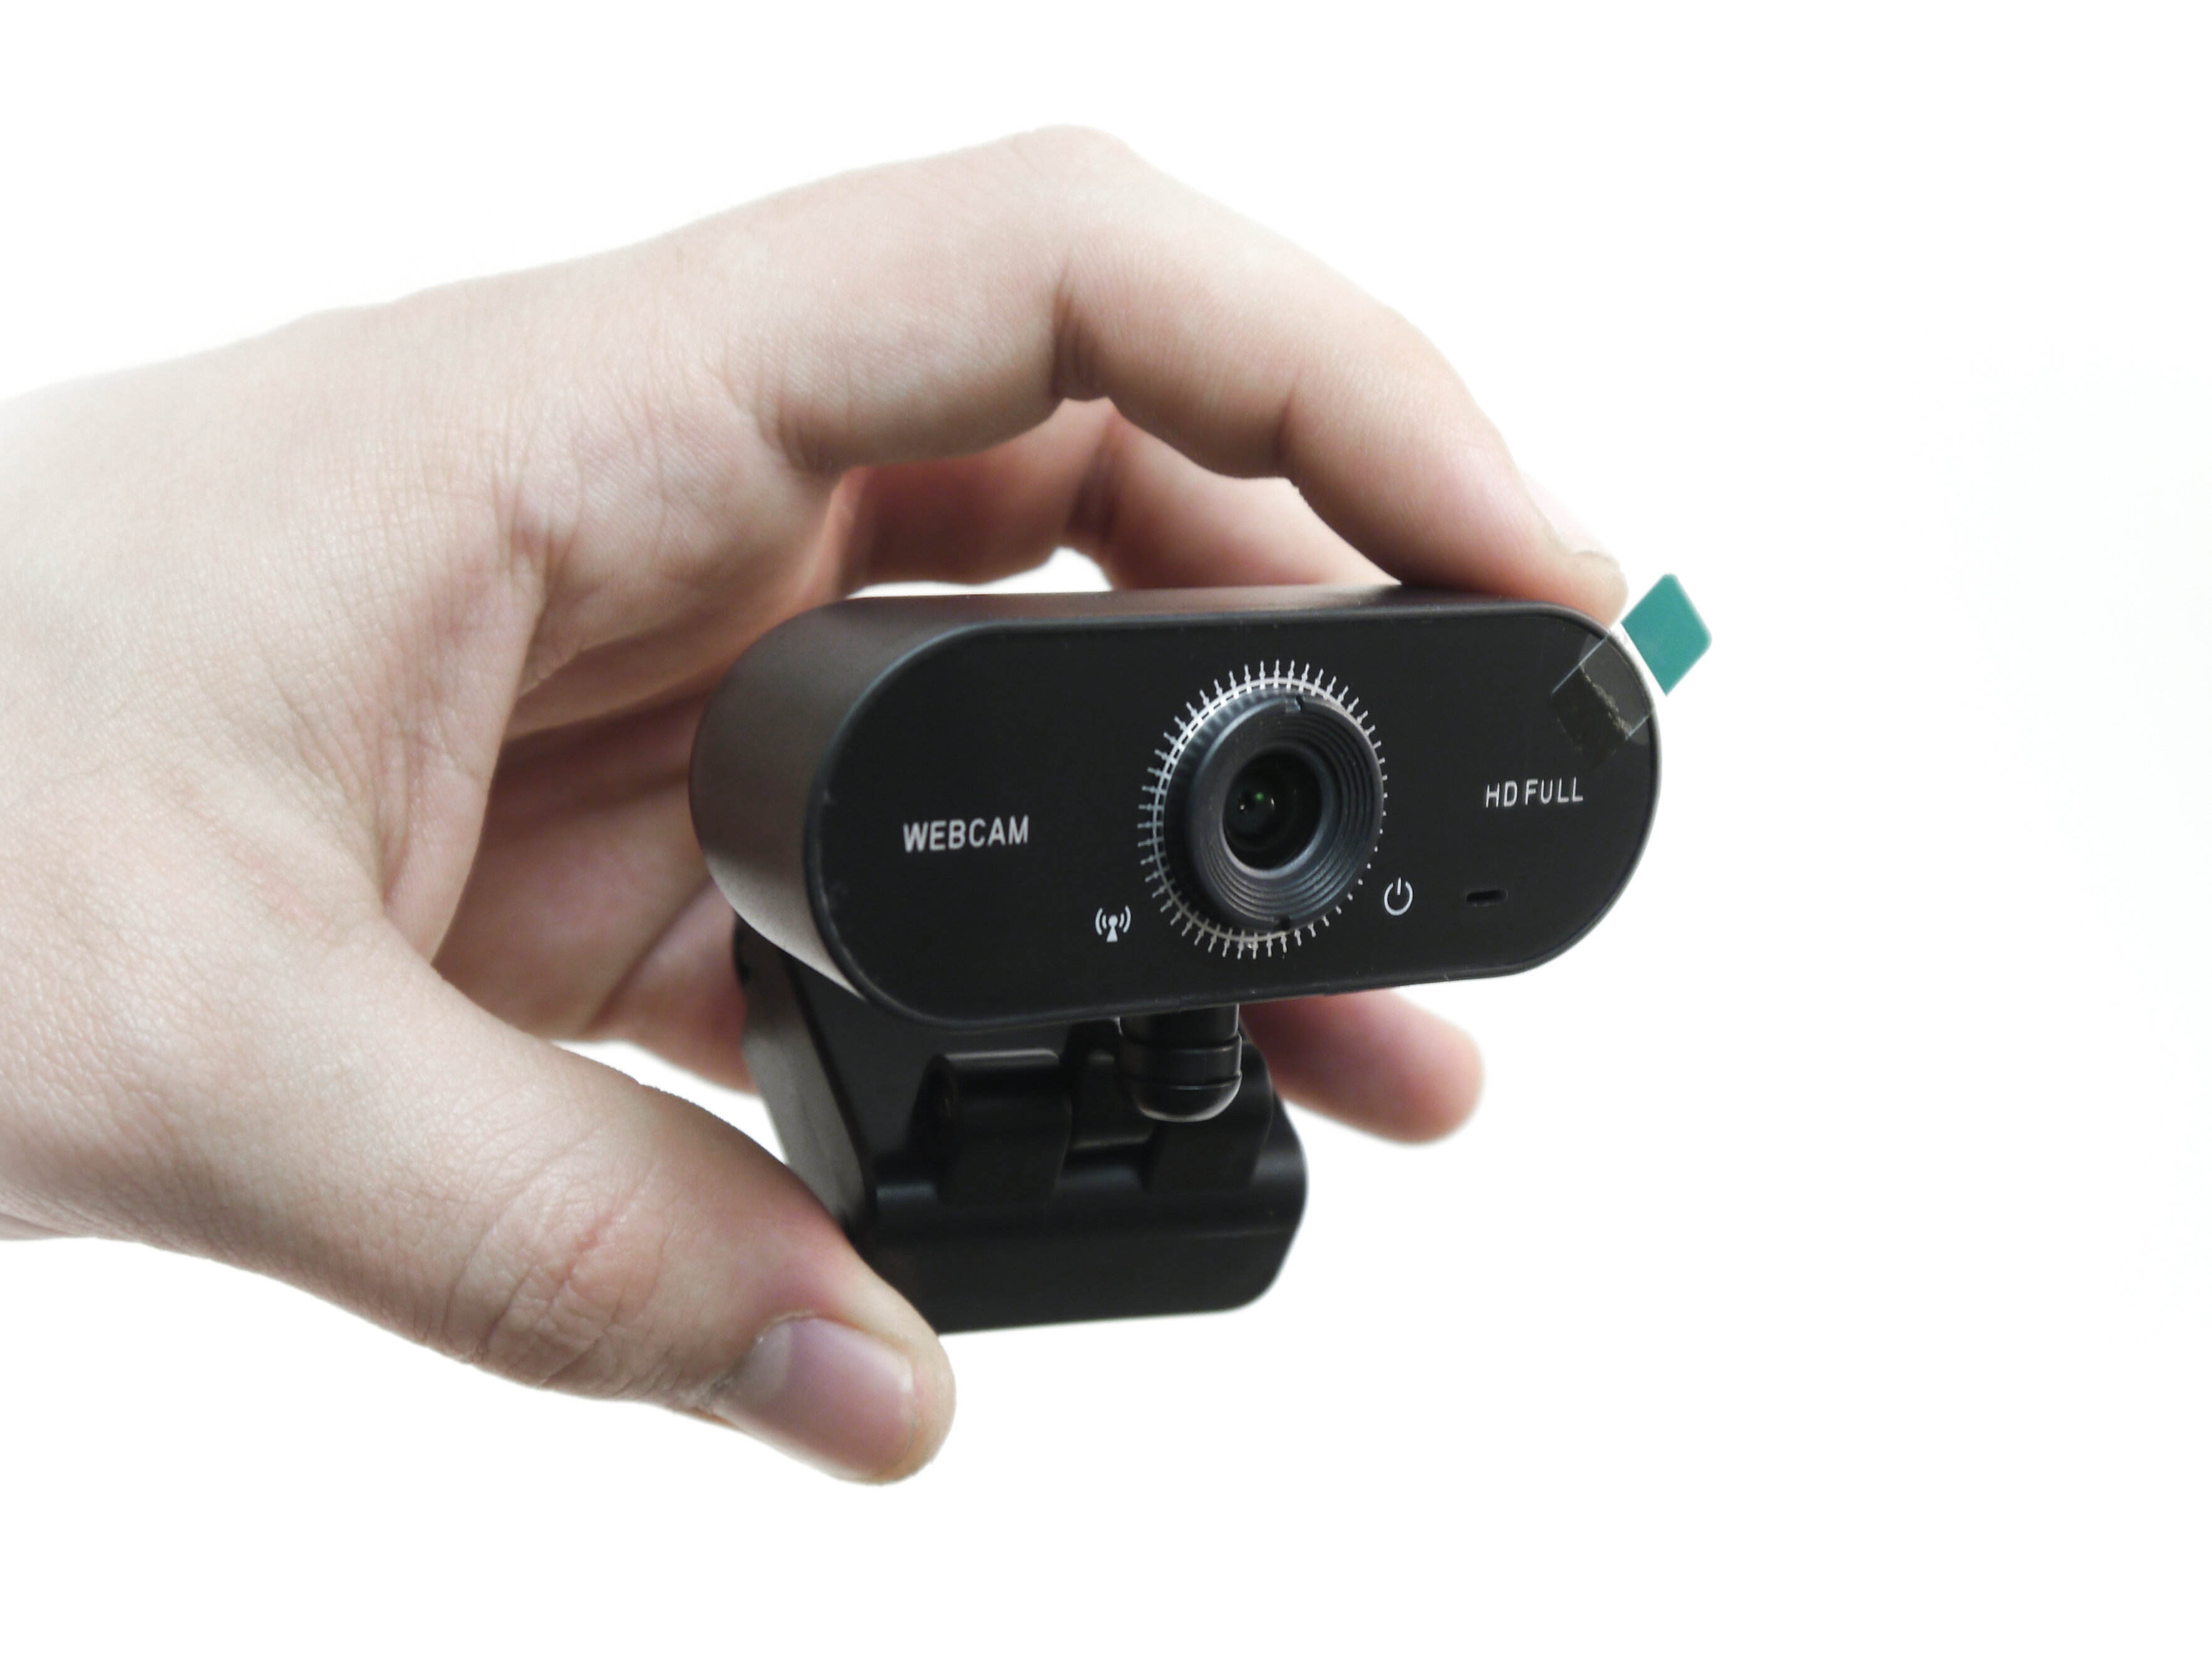 Web камера HDcom Livecam W16-FHD - камера для ноутбука / web камера с микрофоном. Для работы в Skype, YouTube